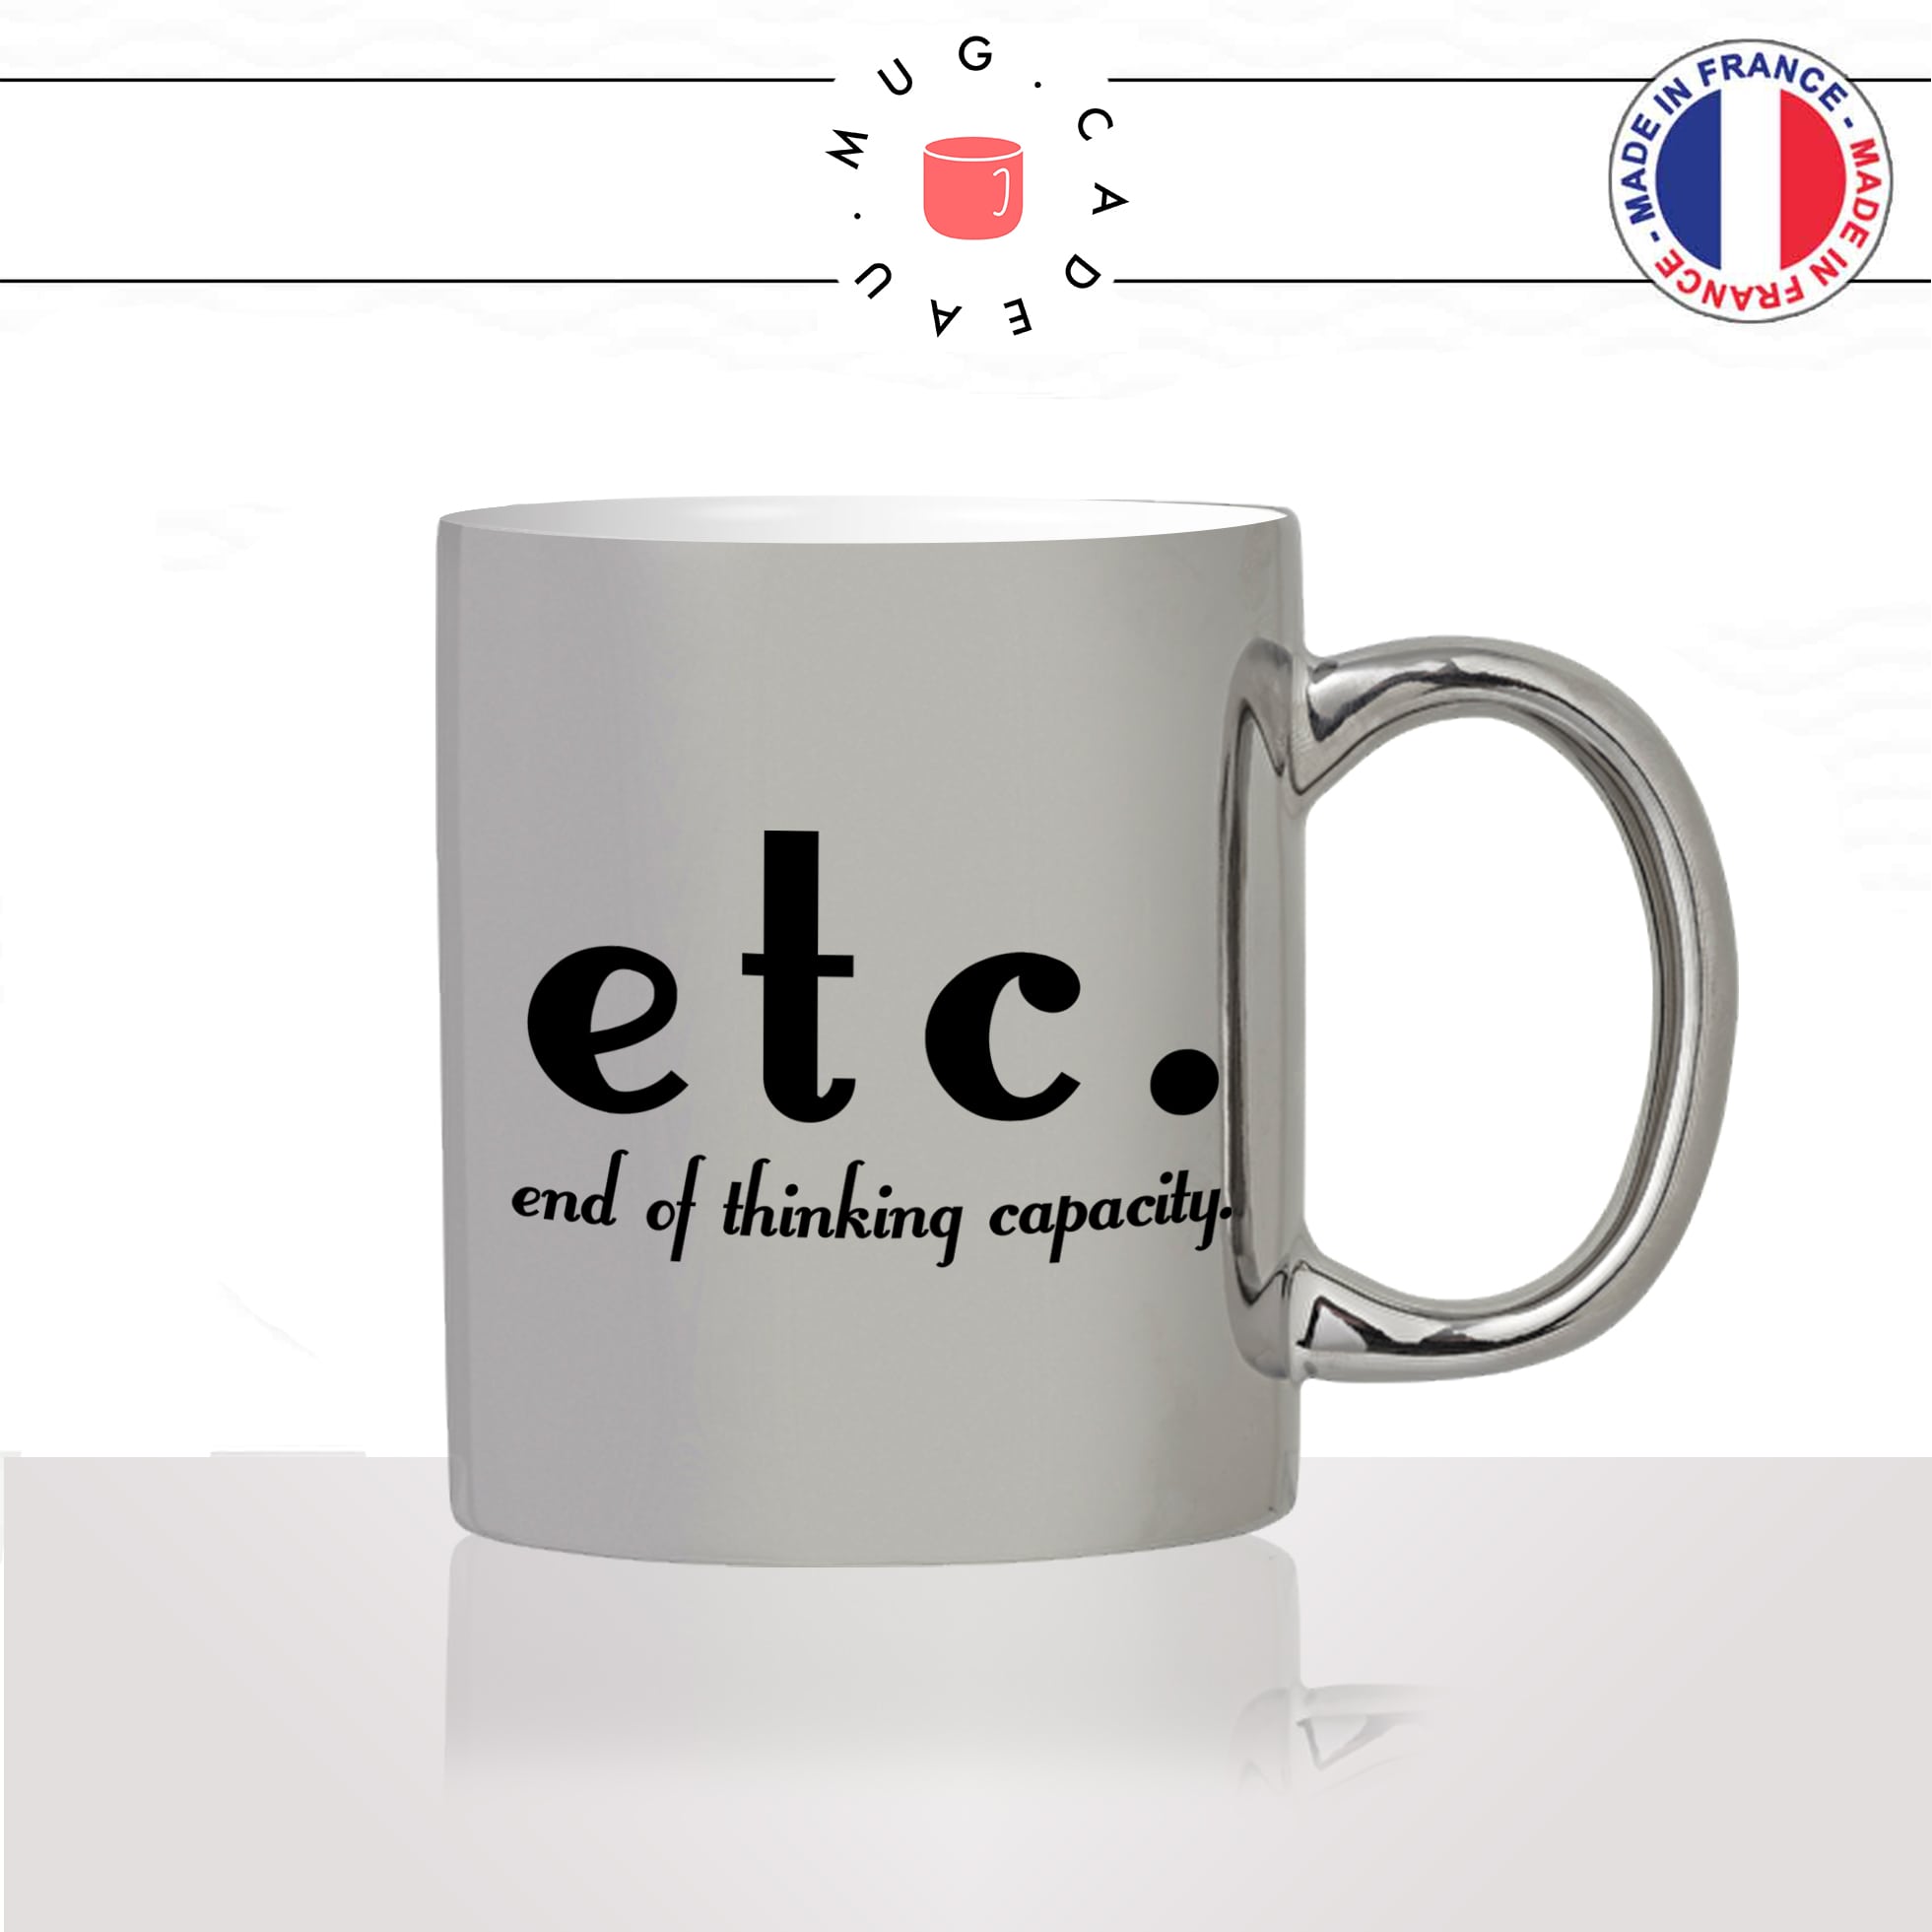 mug-tasse-argent-argenté-silver-etc-end-of-thinking-capacity-capacité-a-penser-mouton-etcetera-anglais-humour-idée-cadeau-fun-cool-café-thé2-min